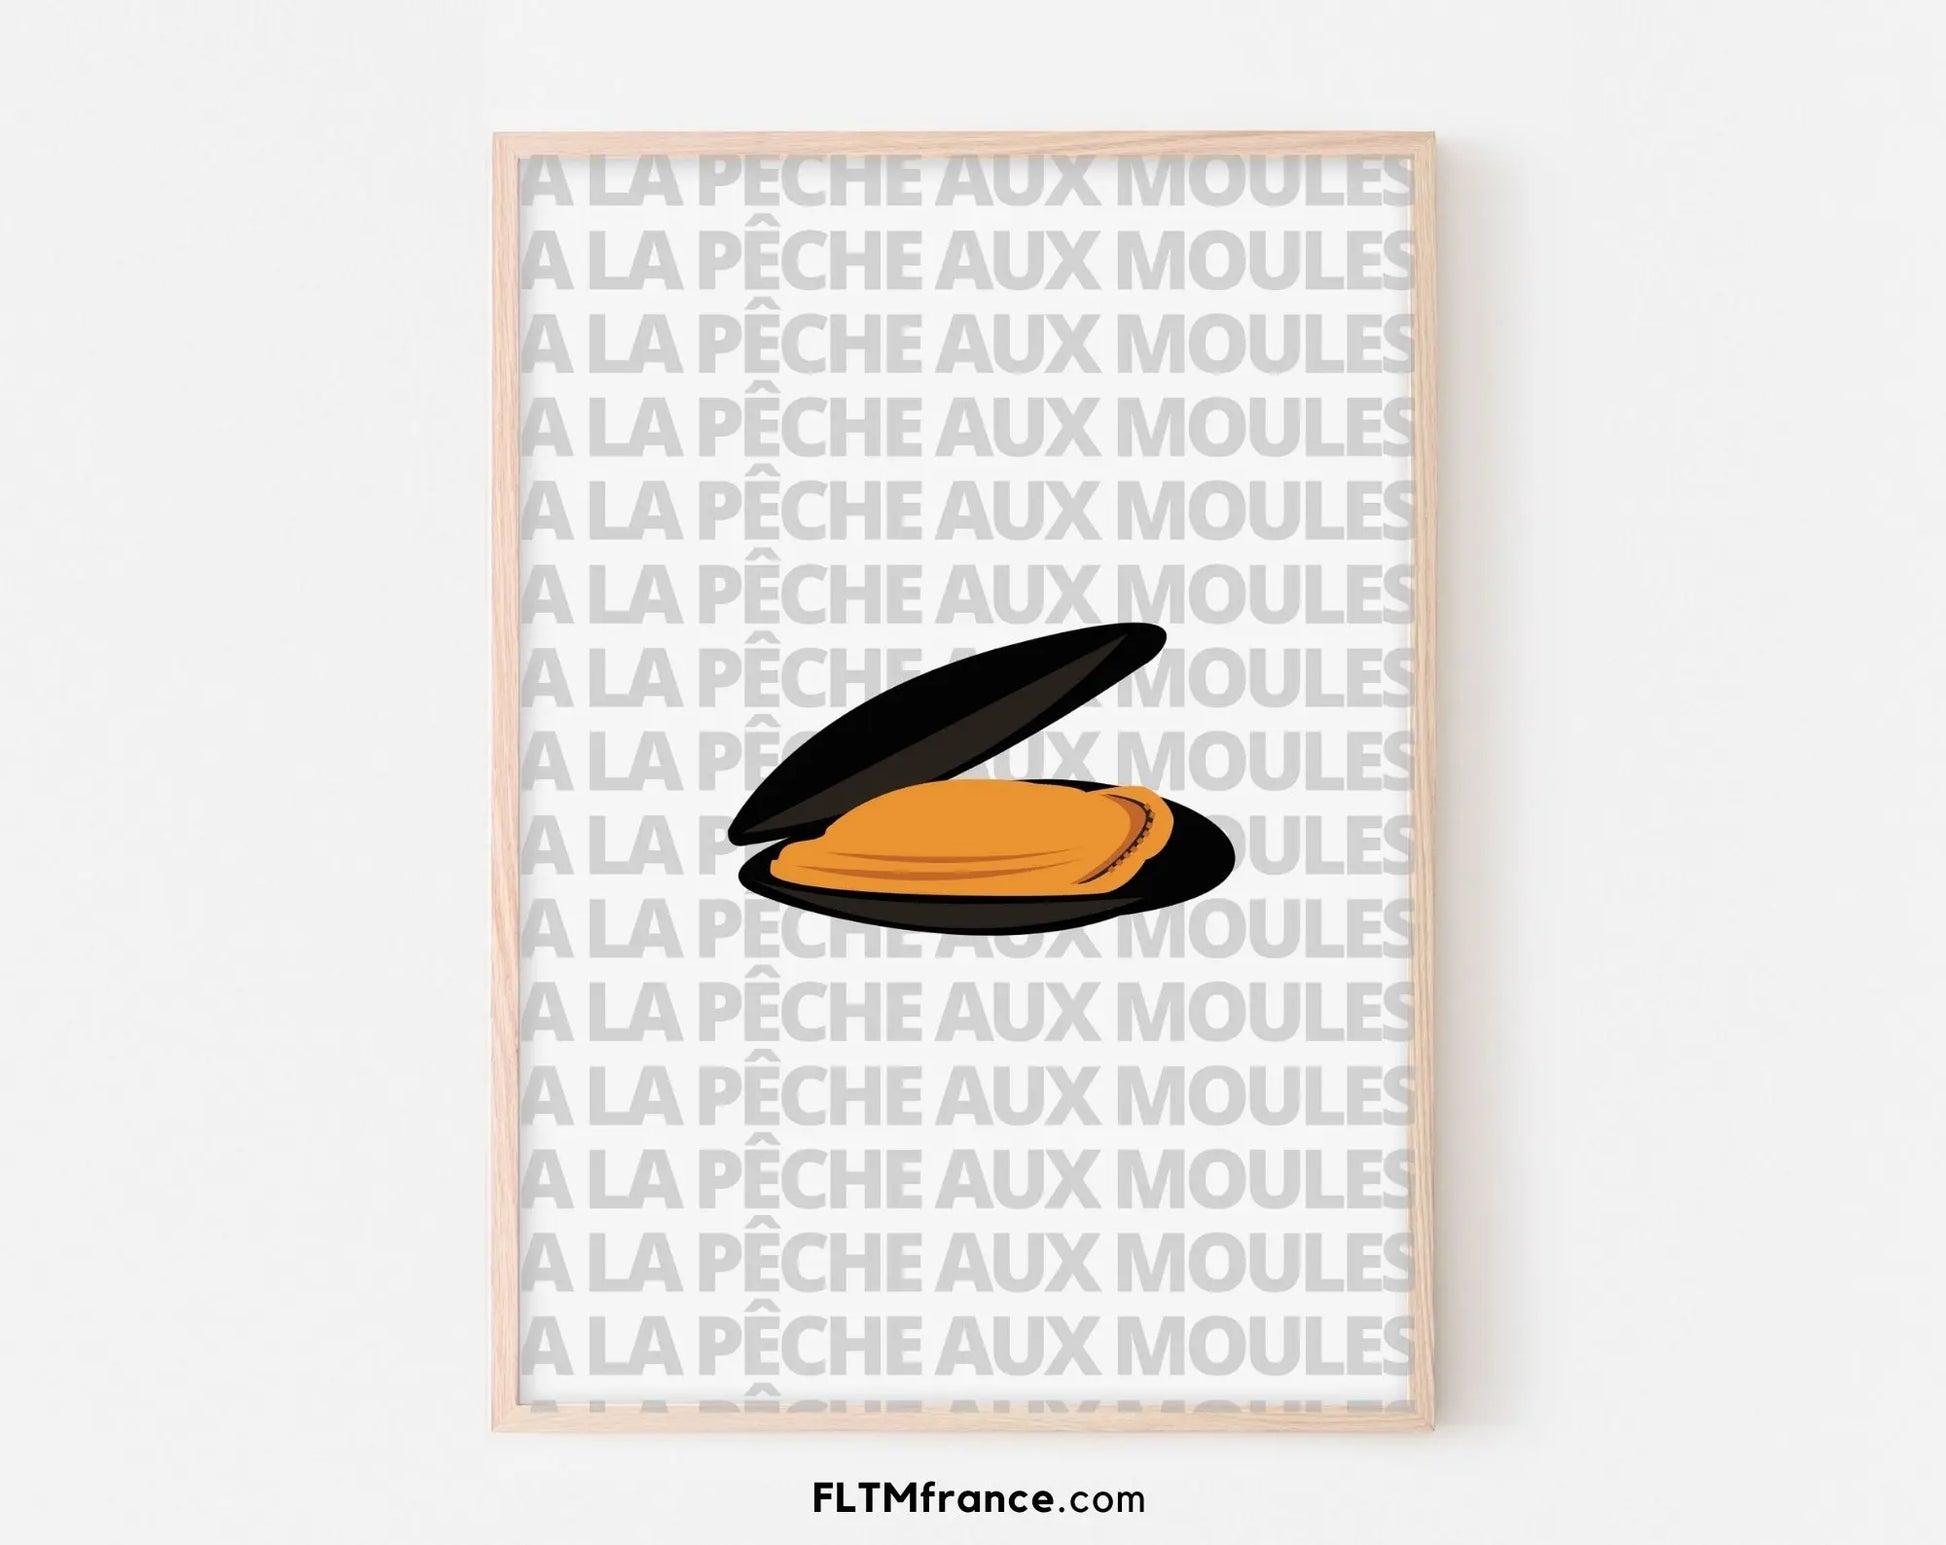 Affiche A la pêche aux moules - Expression culinaire Française FLTMfrance